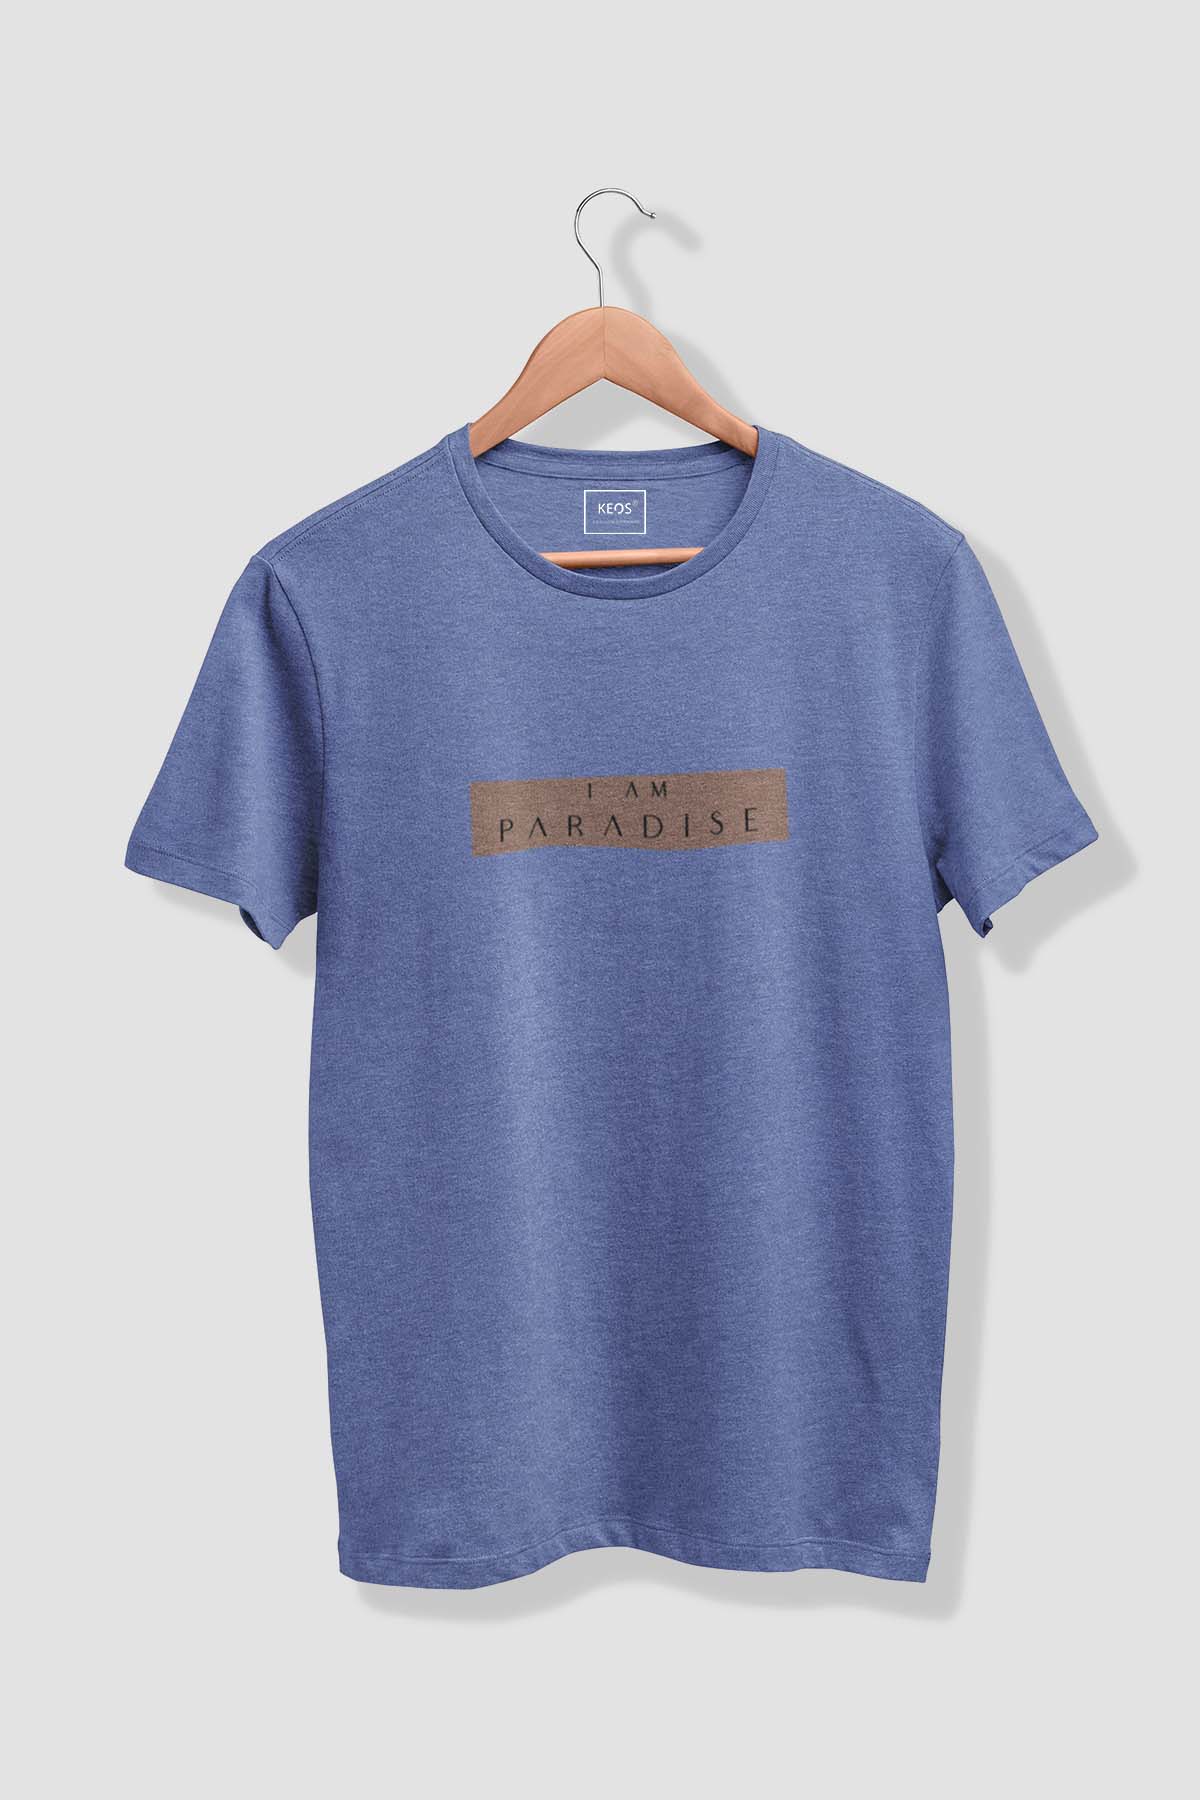 I am Paradise - Melange Cotton T-shirt - keos.life